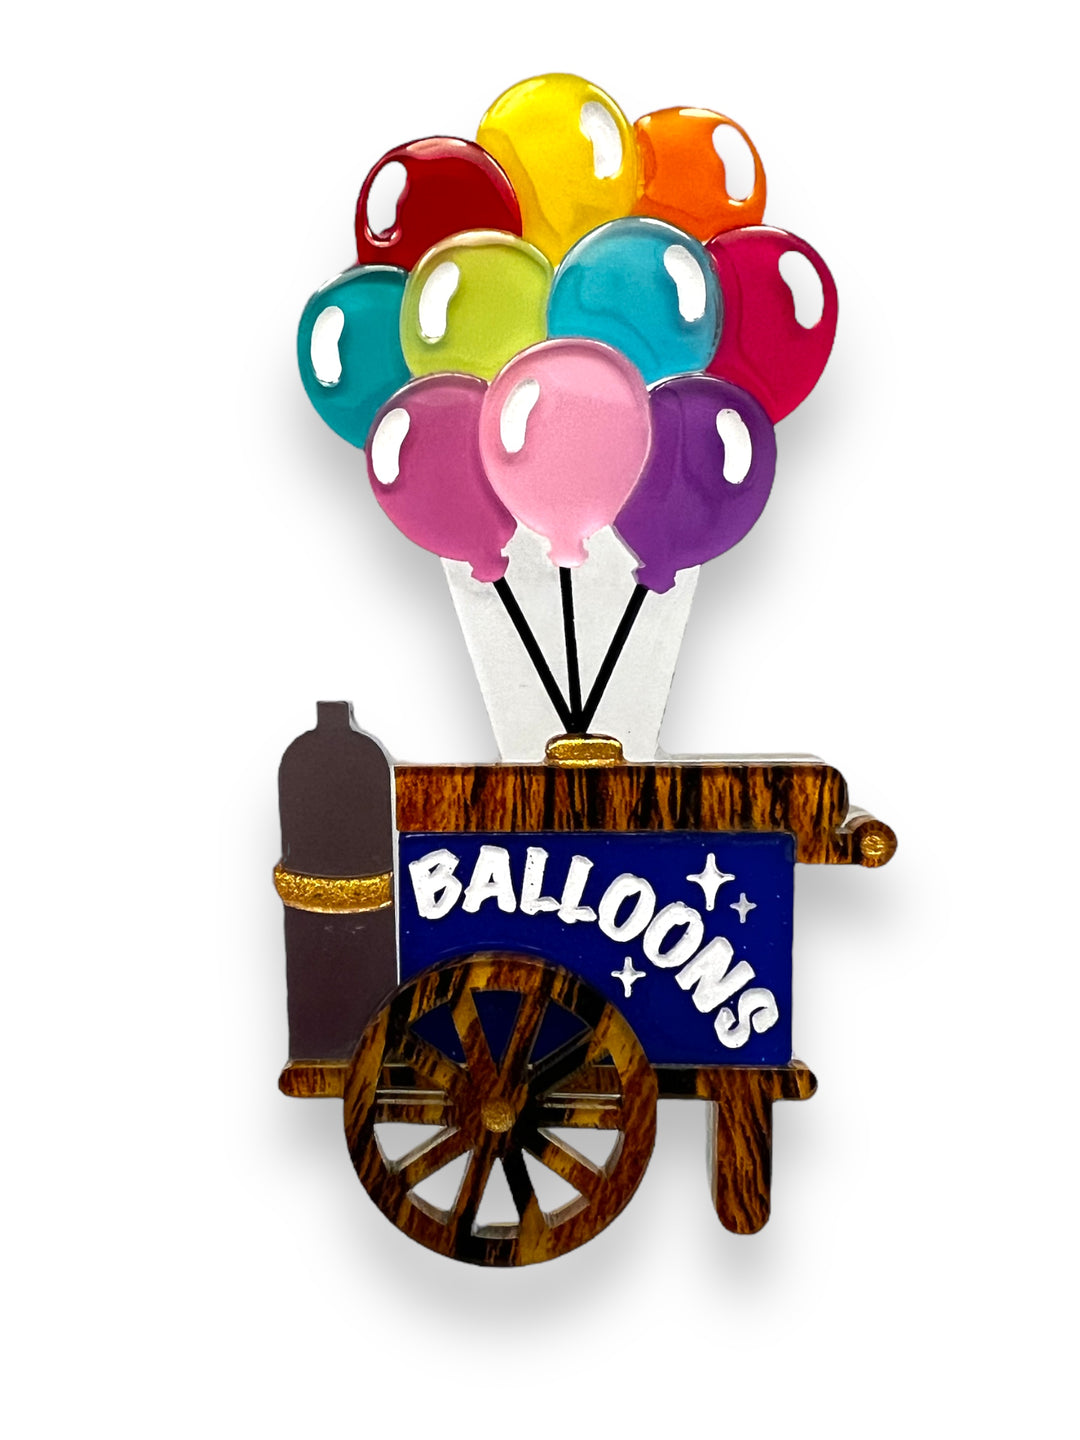 Funfair Balloon Cart by Makokot x Lipstick & Chrome